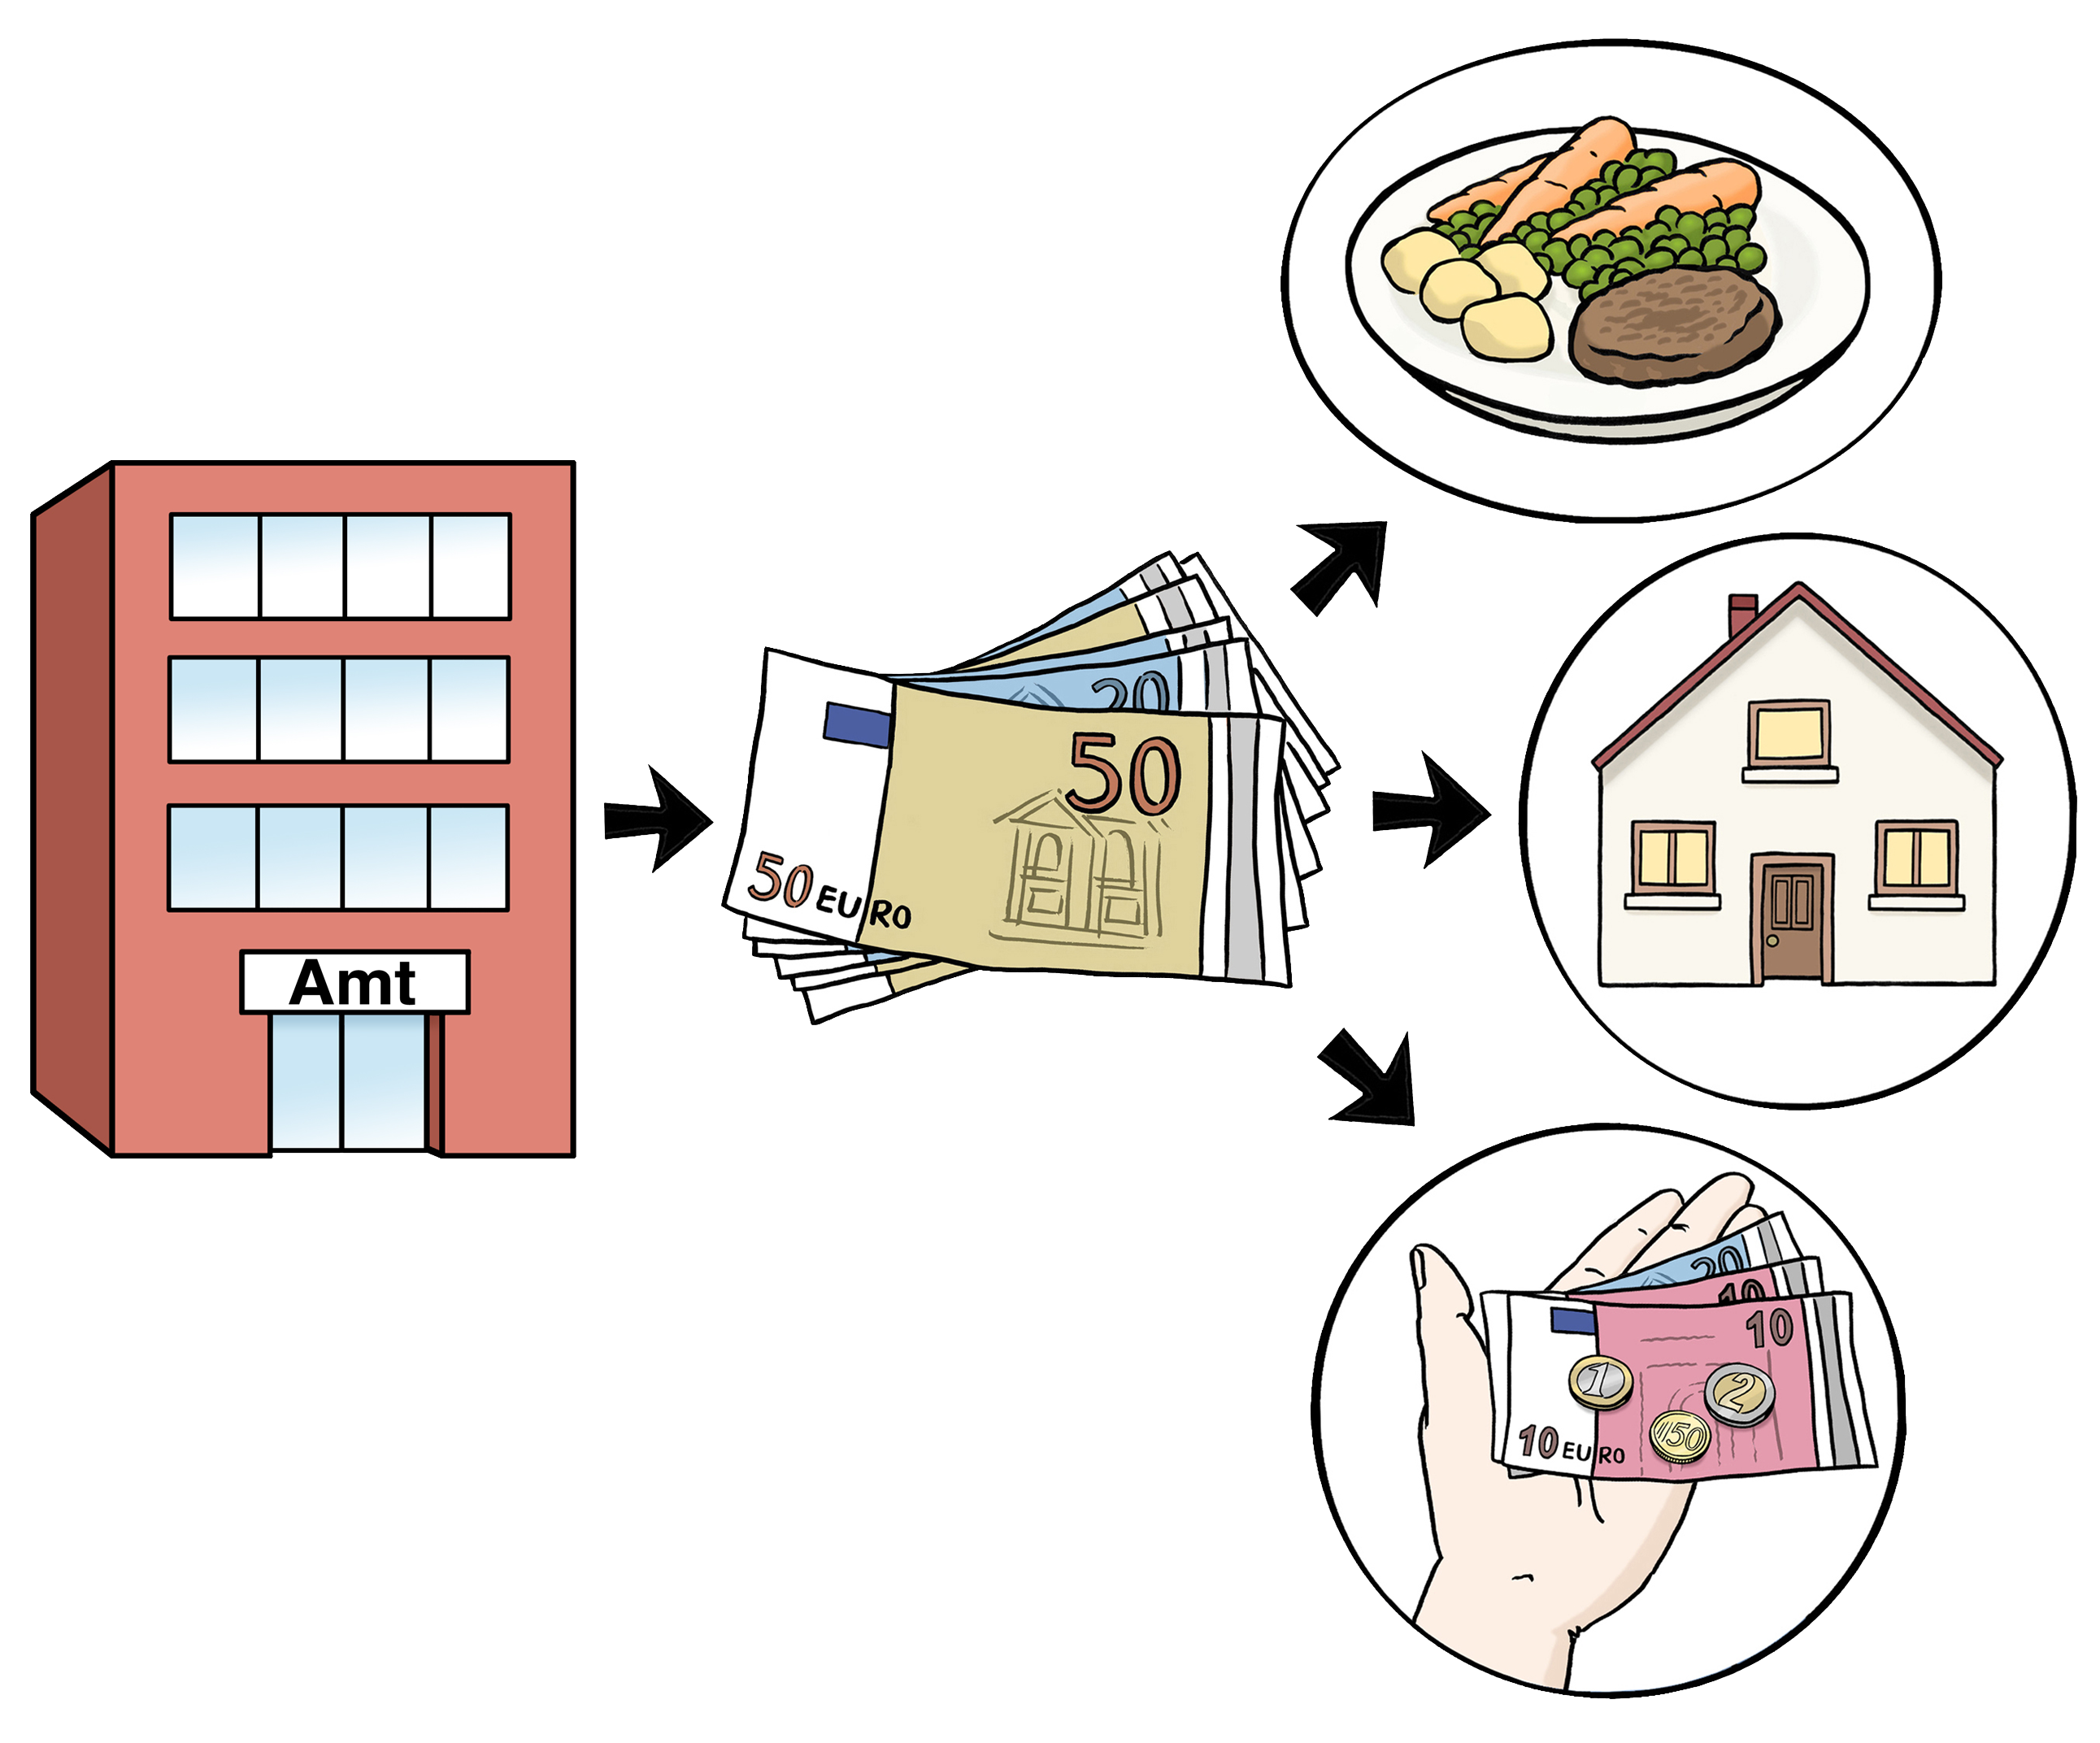 Leichte Sprache Bild: Links ein Amt, in der Mitte viele Geldscheine, rechts drei Felder: eines mit Essen, eines mit einem Haus, eines mit einer Hand mit Geld